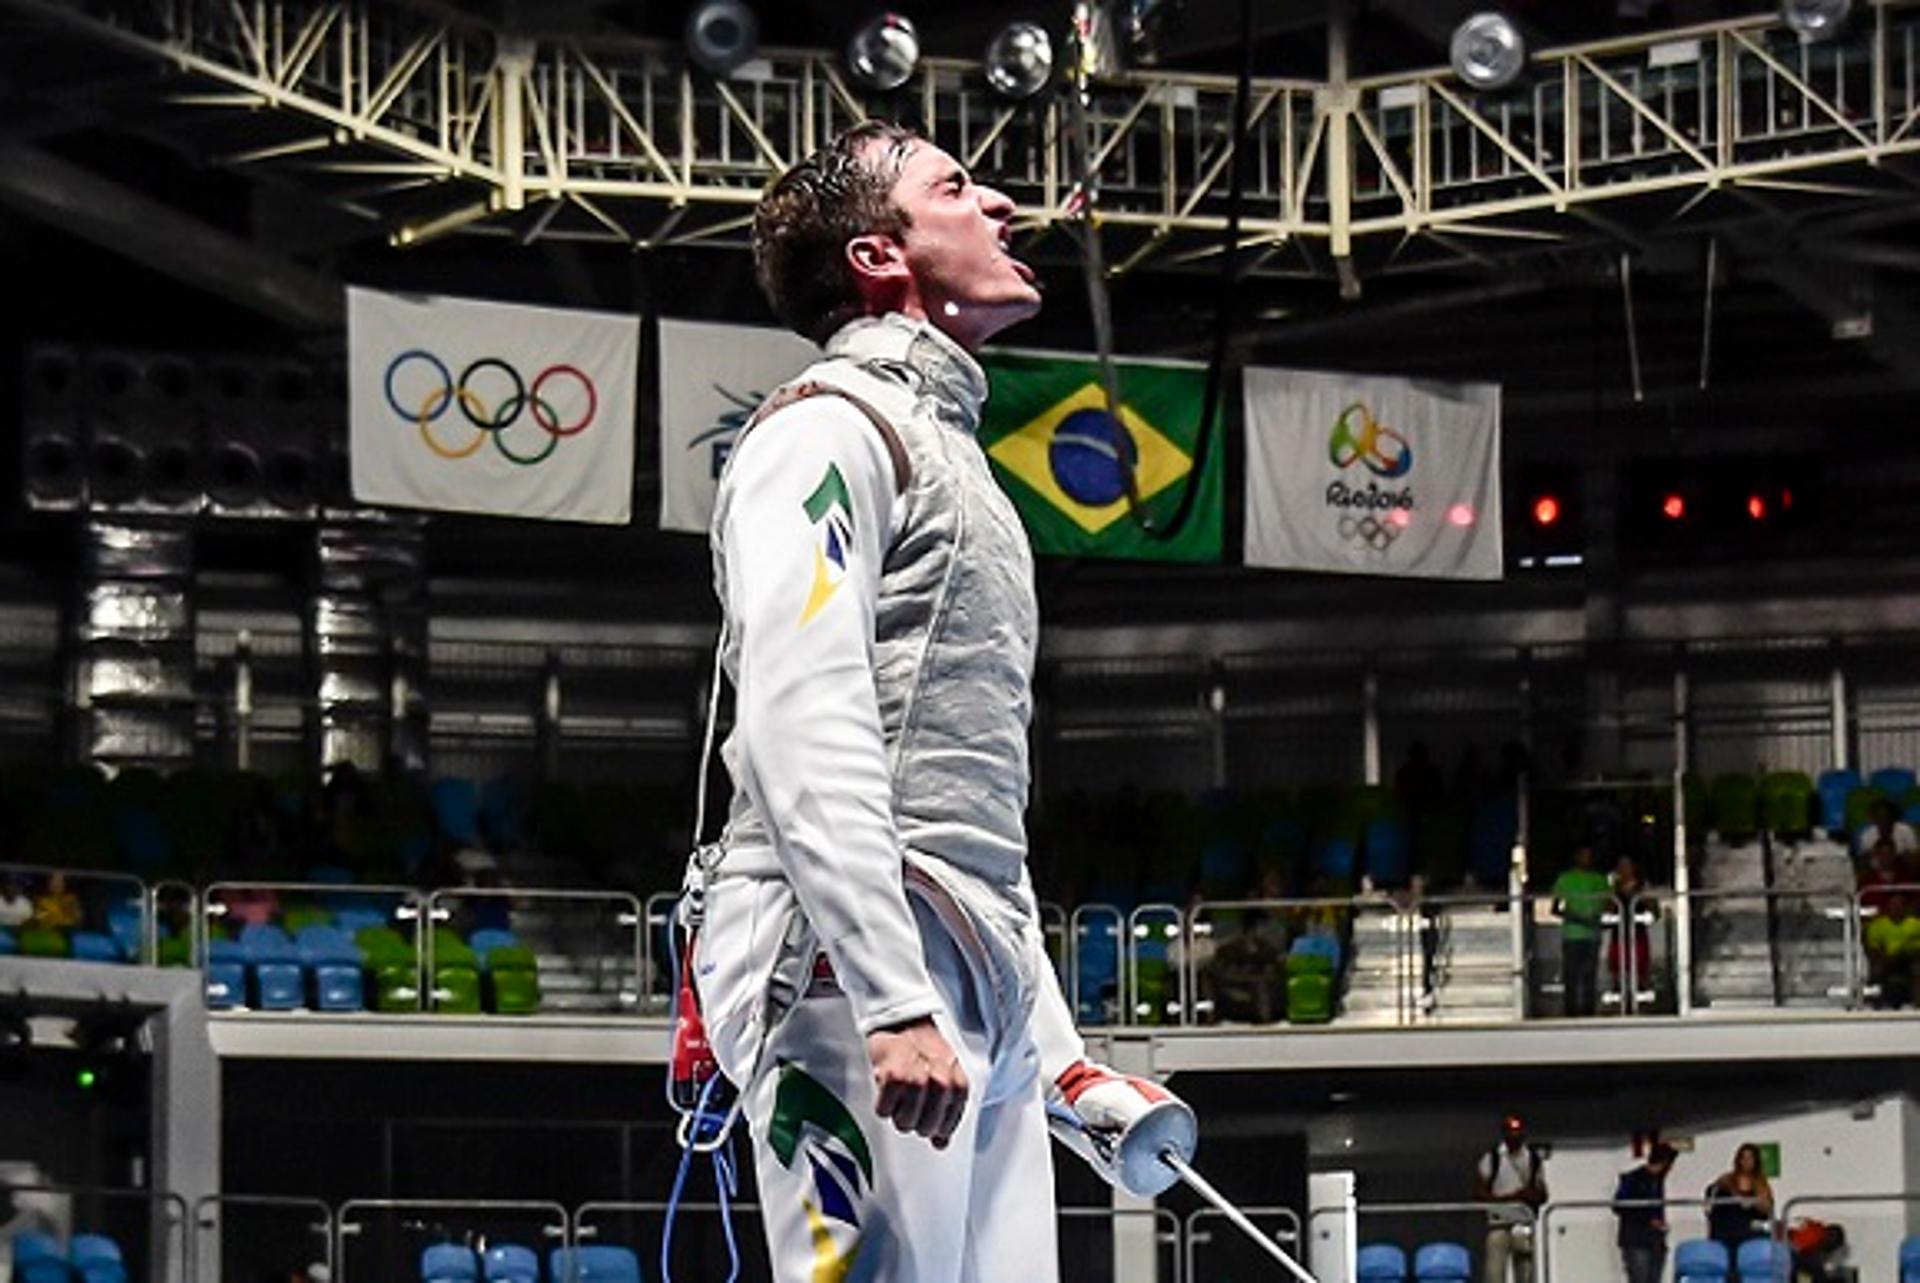 Guilherme Toldo é esperança de medalha para a esgrima brasileira (Foto: Wander Roberto/Exemplus/COB)